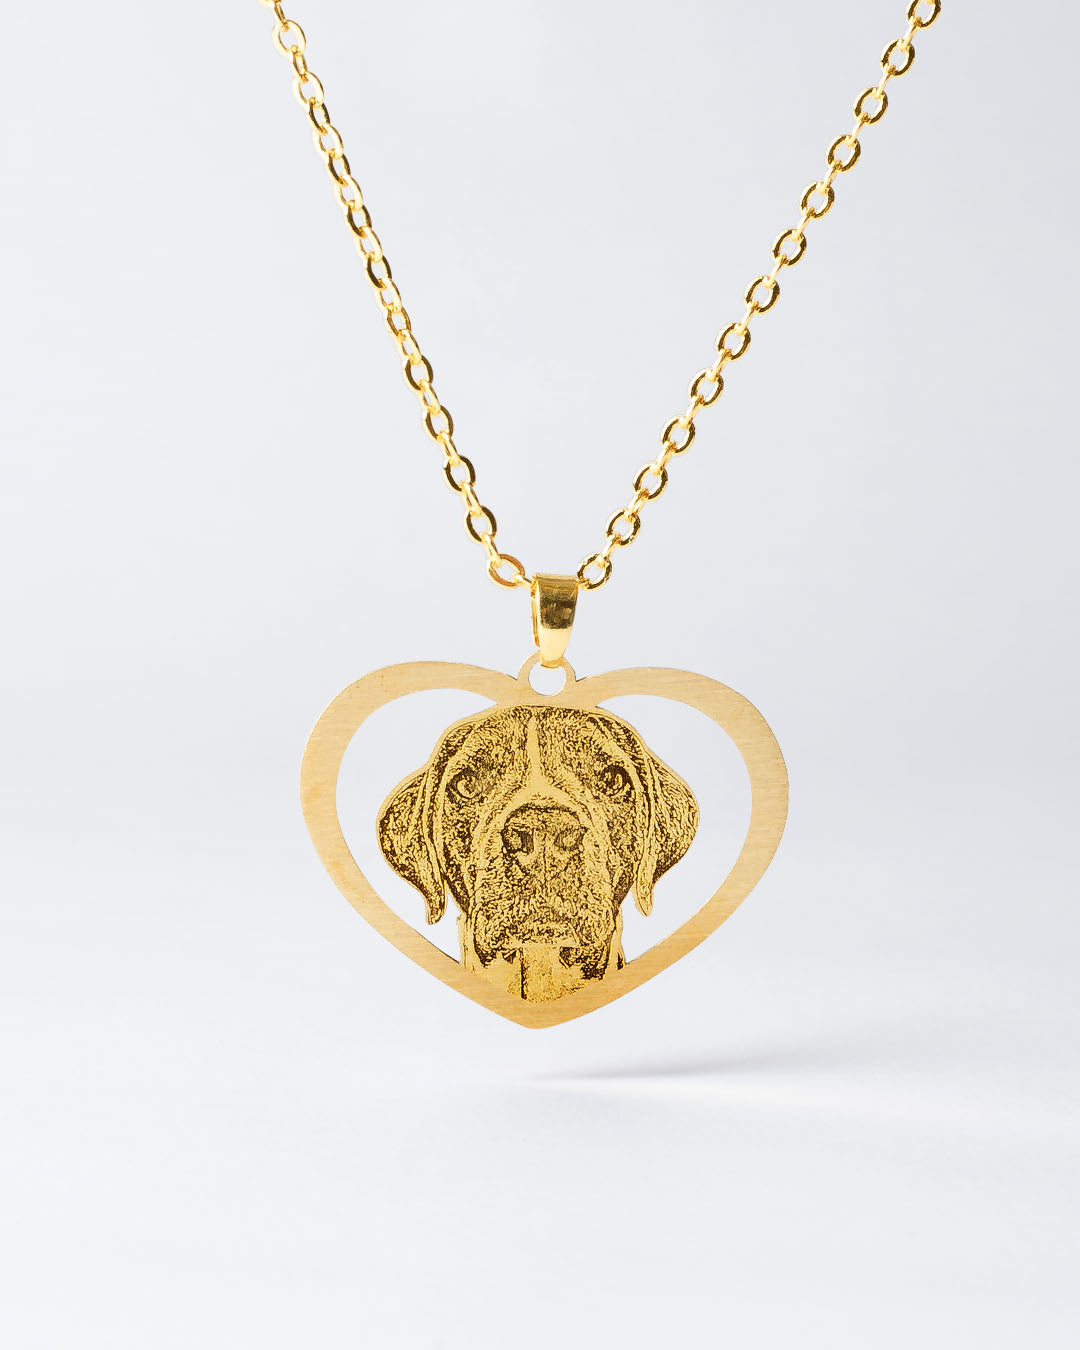 Silvercut Unique Jewelry Small Dog Keychain Gold Tone New in Box